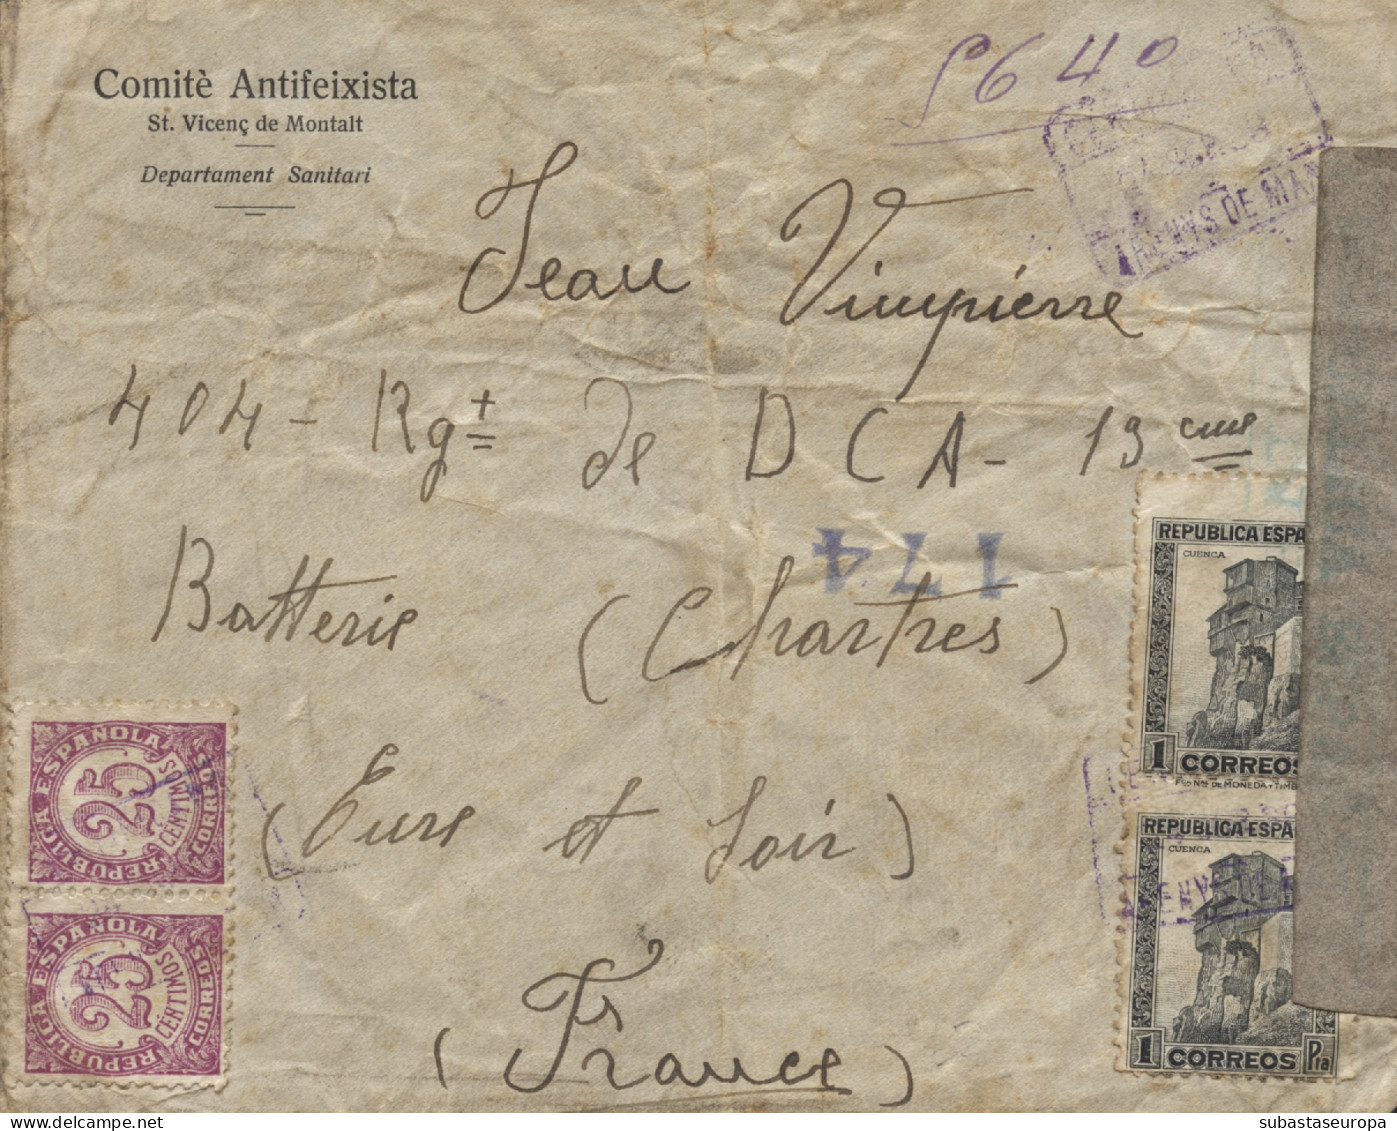 Carta Certificada Circulada De Sant Vicenç De Montalt A Francia, El Año 1938. El Sobre Lleva Membrete "Comité Antifeixis - Republikanische Zensur